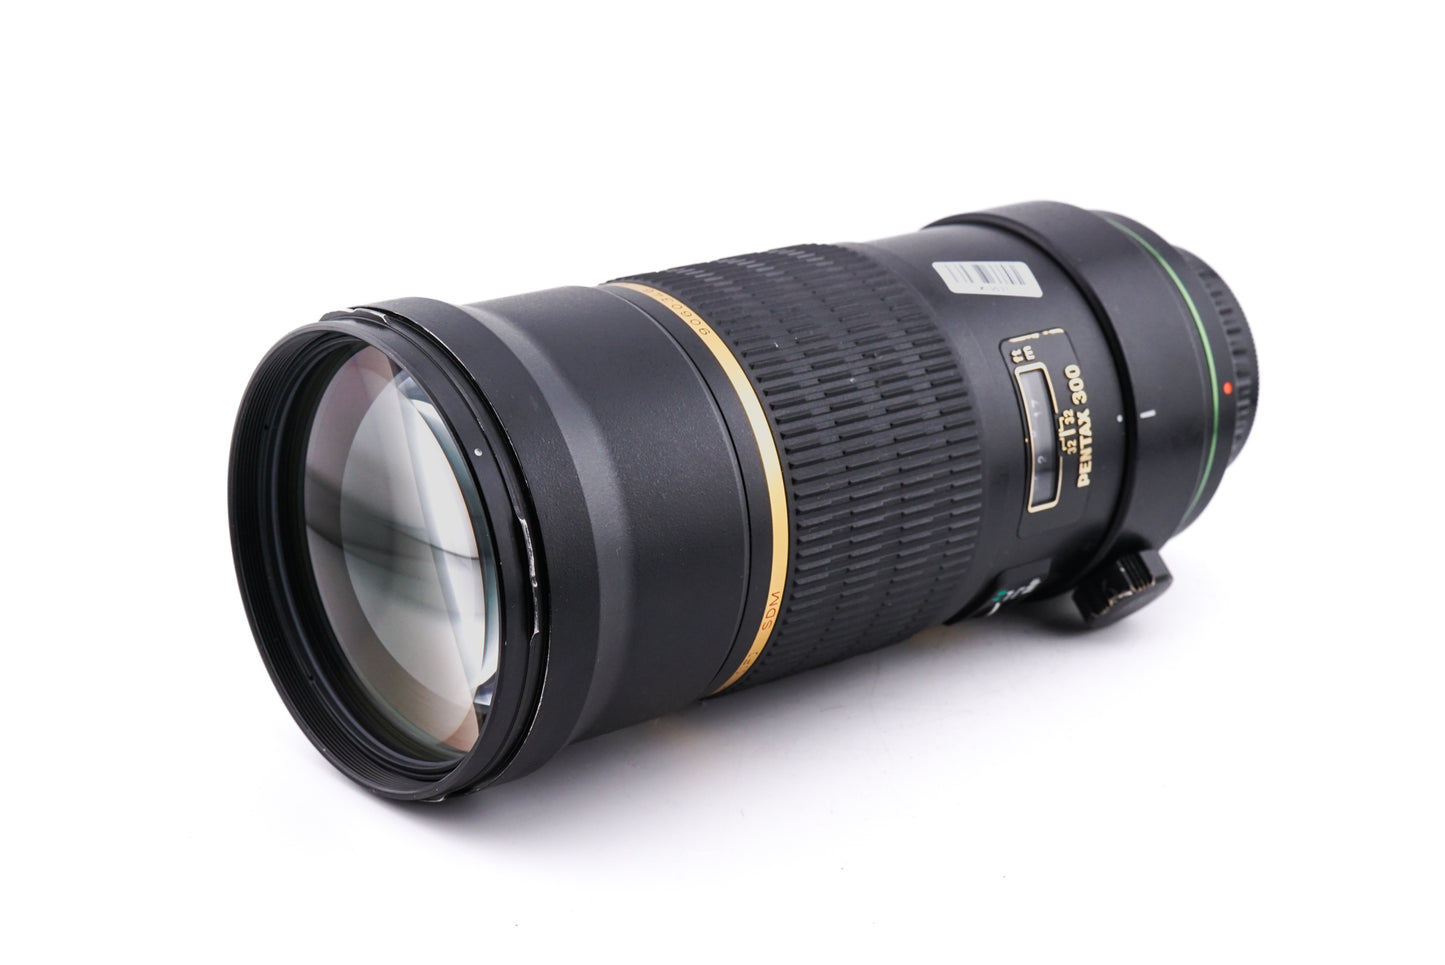 Pentax 300mm f4 SMC Pentax-DA* ED (IF) SDM - Lens